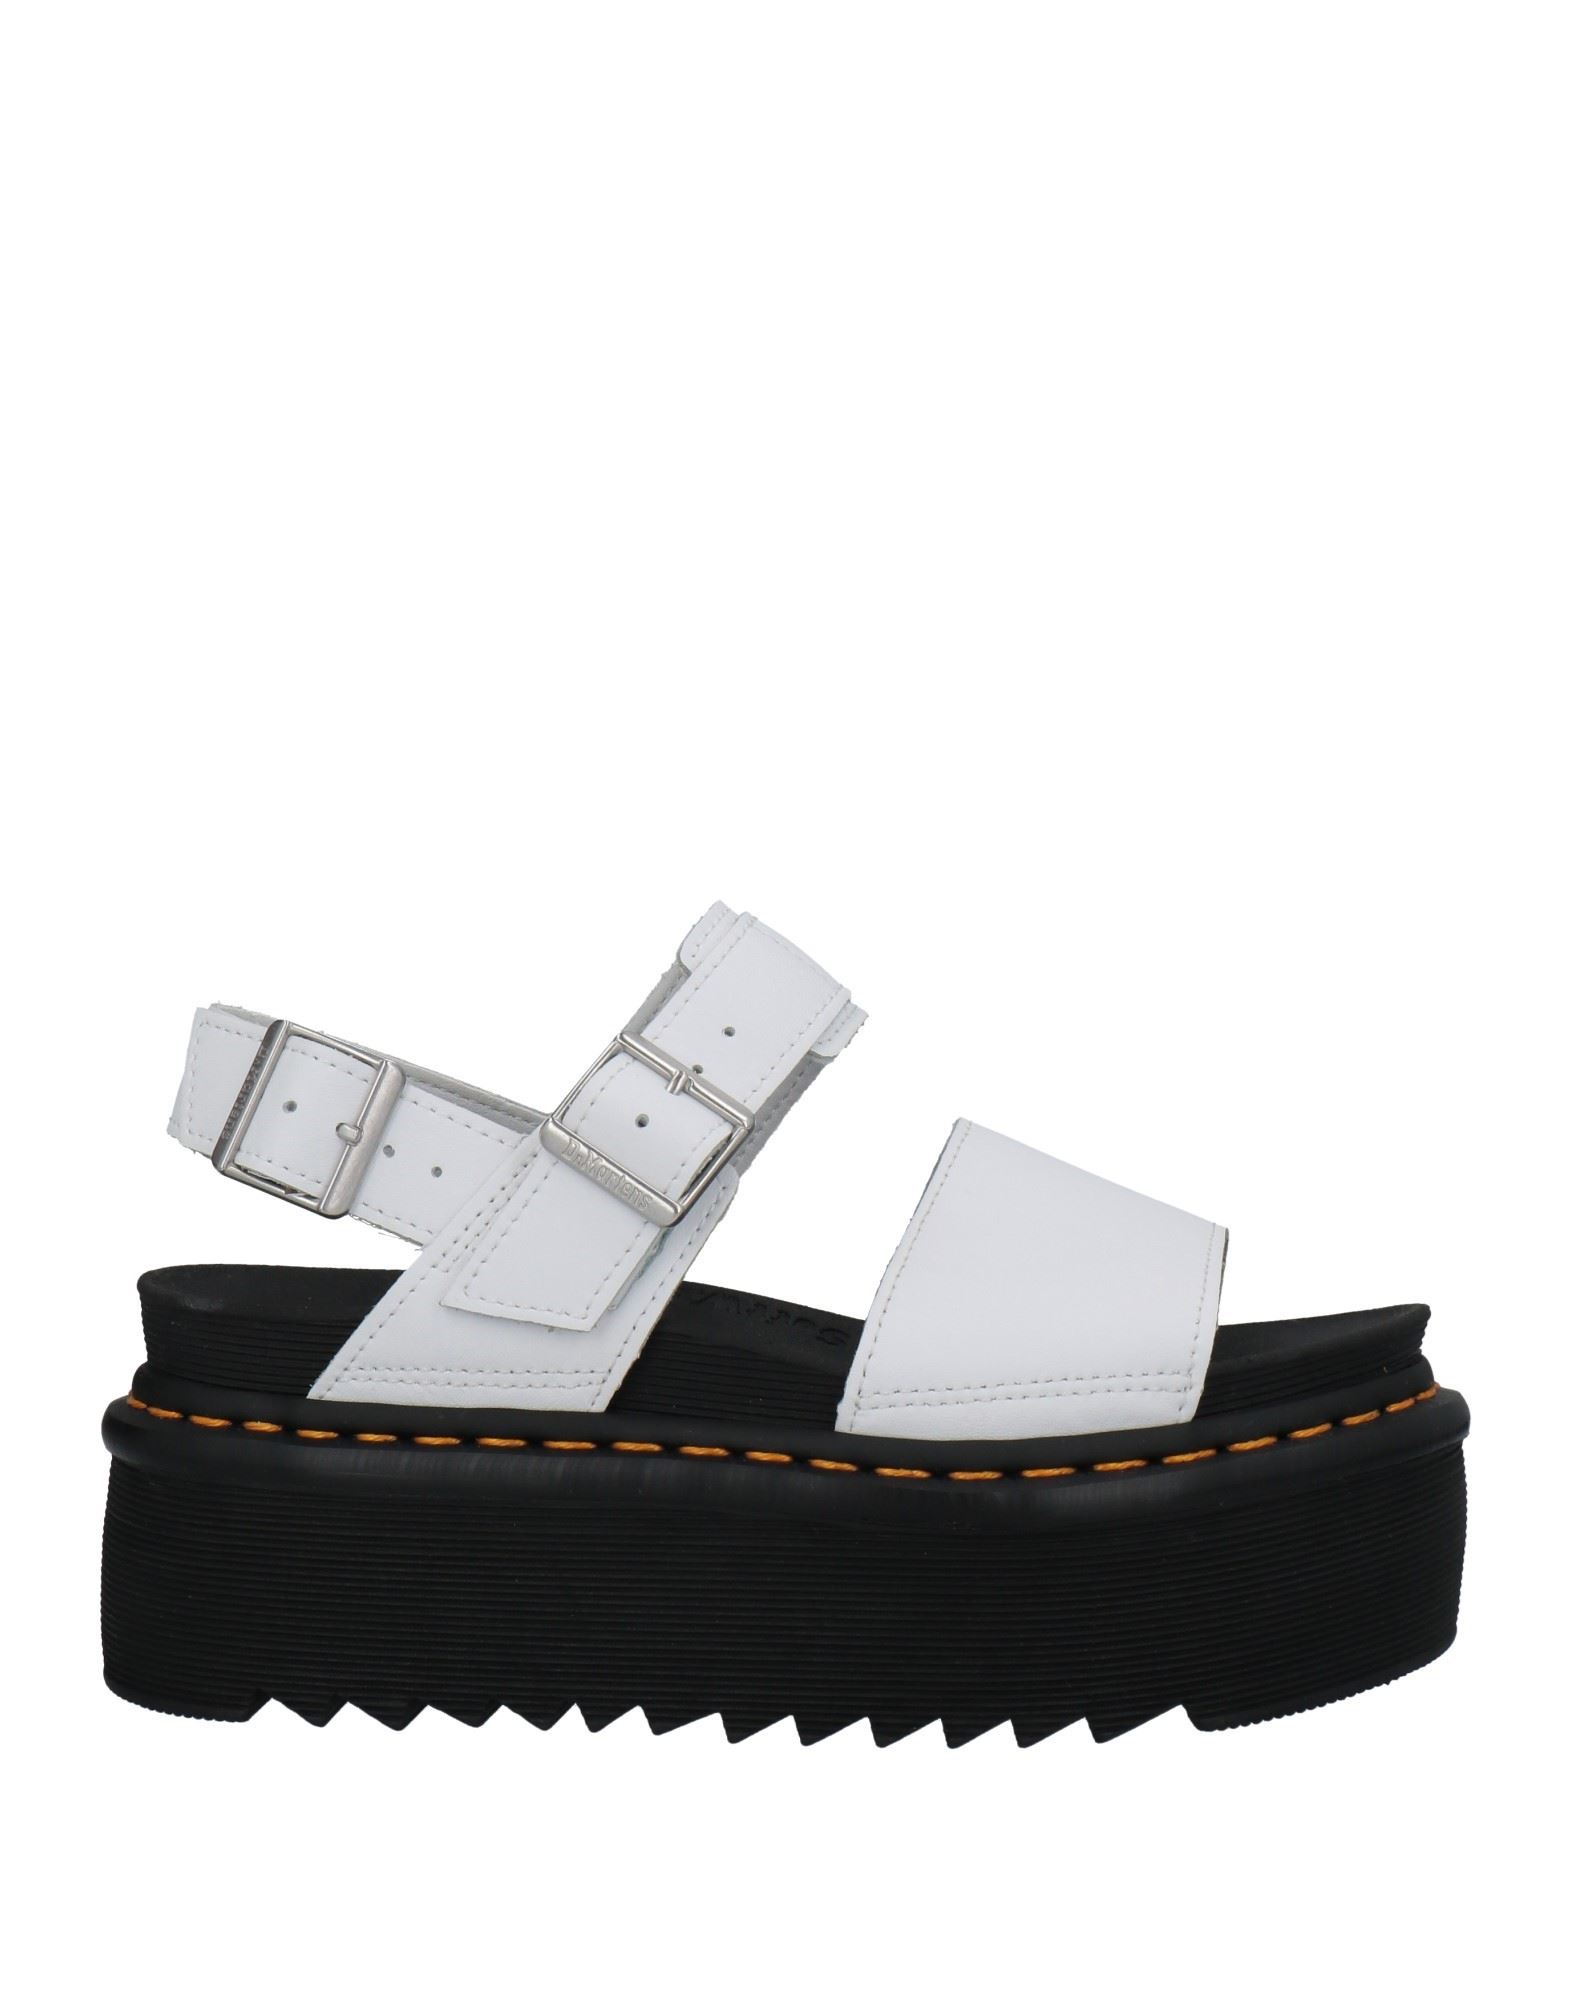 Shop Dr. Martens' Dr. Martens Woman Sandals White Size 8.5 Soft Leather